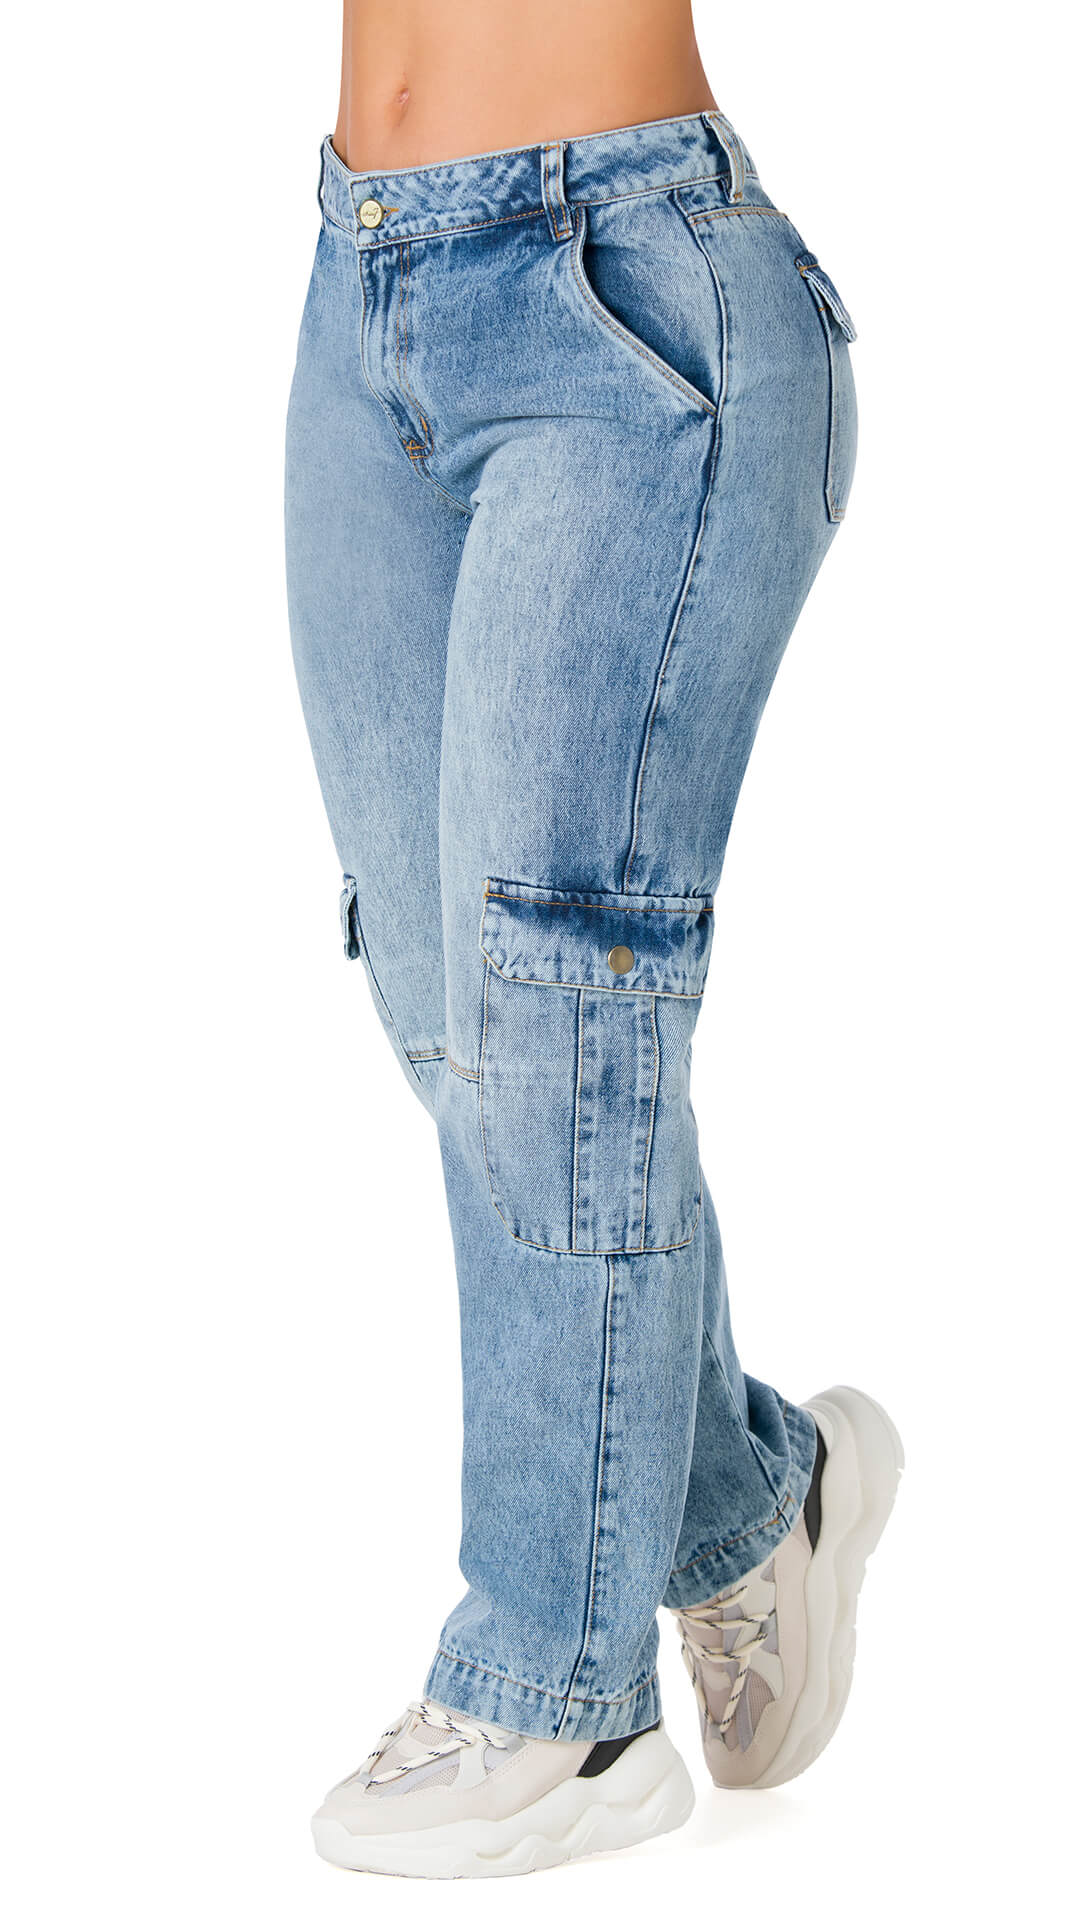 Pantalón Jeans con exclusivo diseño levanta cola Colombiano que resalta la  figura de la mujer. Pantalón Vaquero Jeans -  Portugal